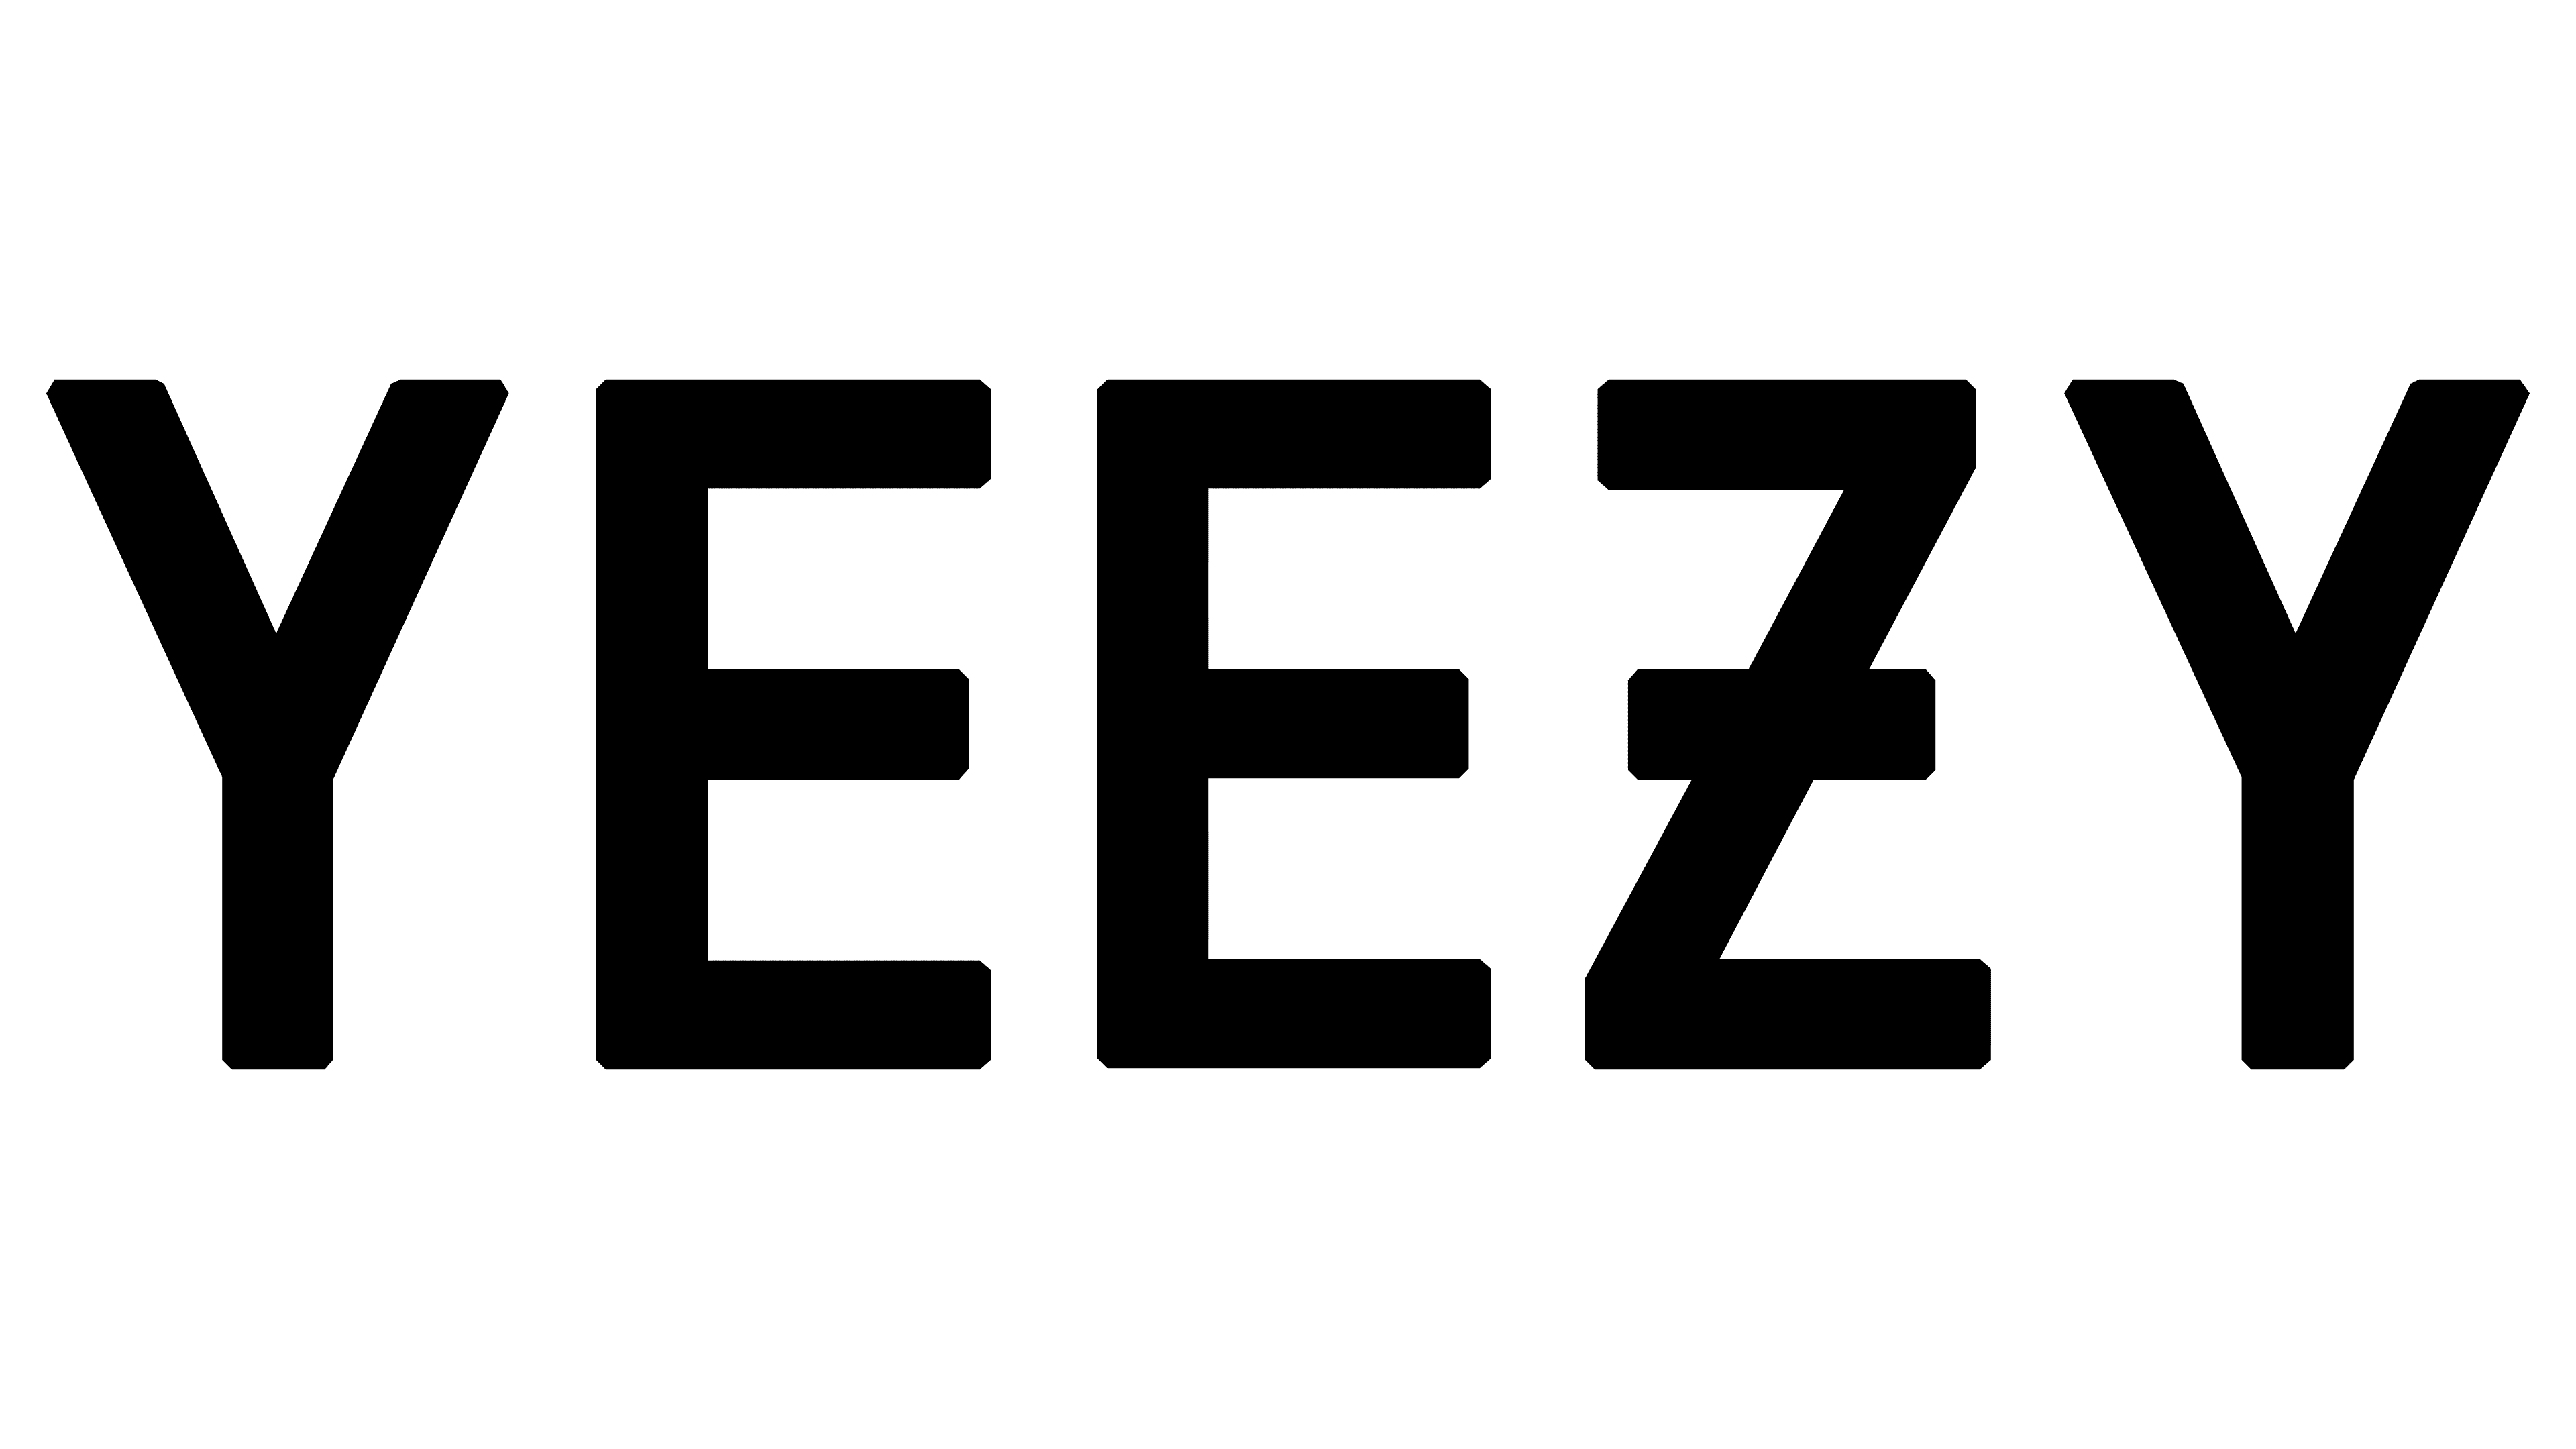 Yeezy Z Letter | vlr.eng.br